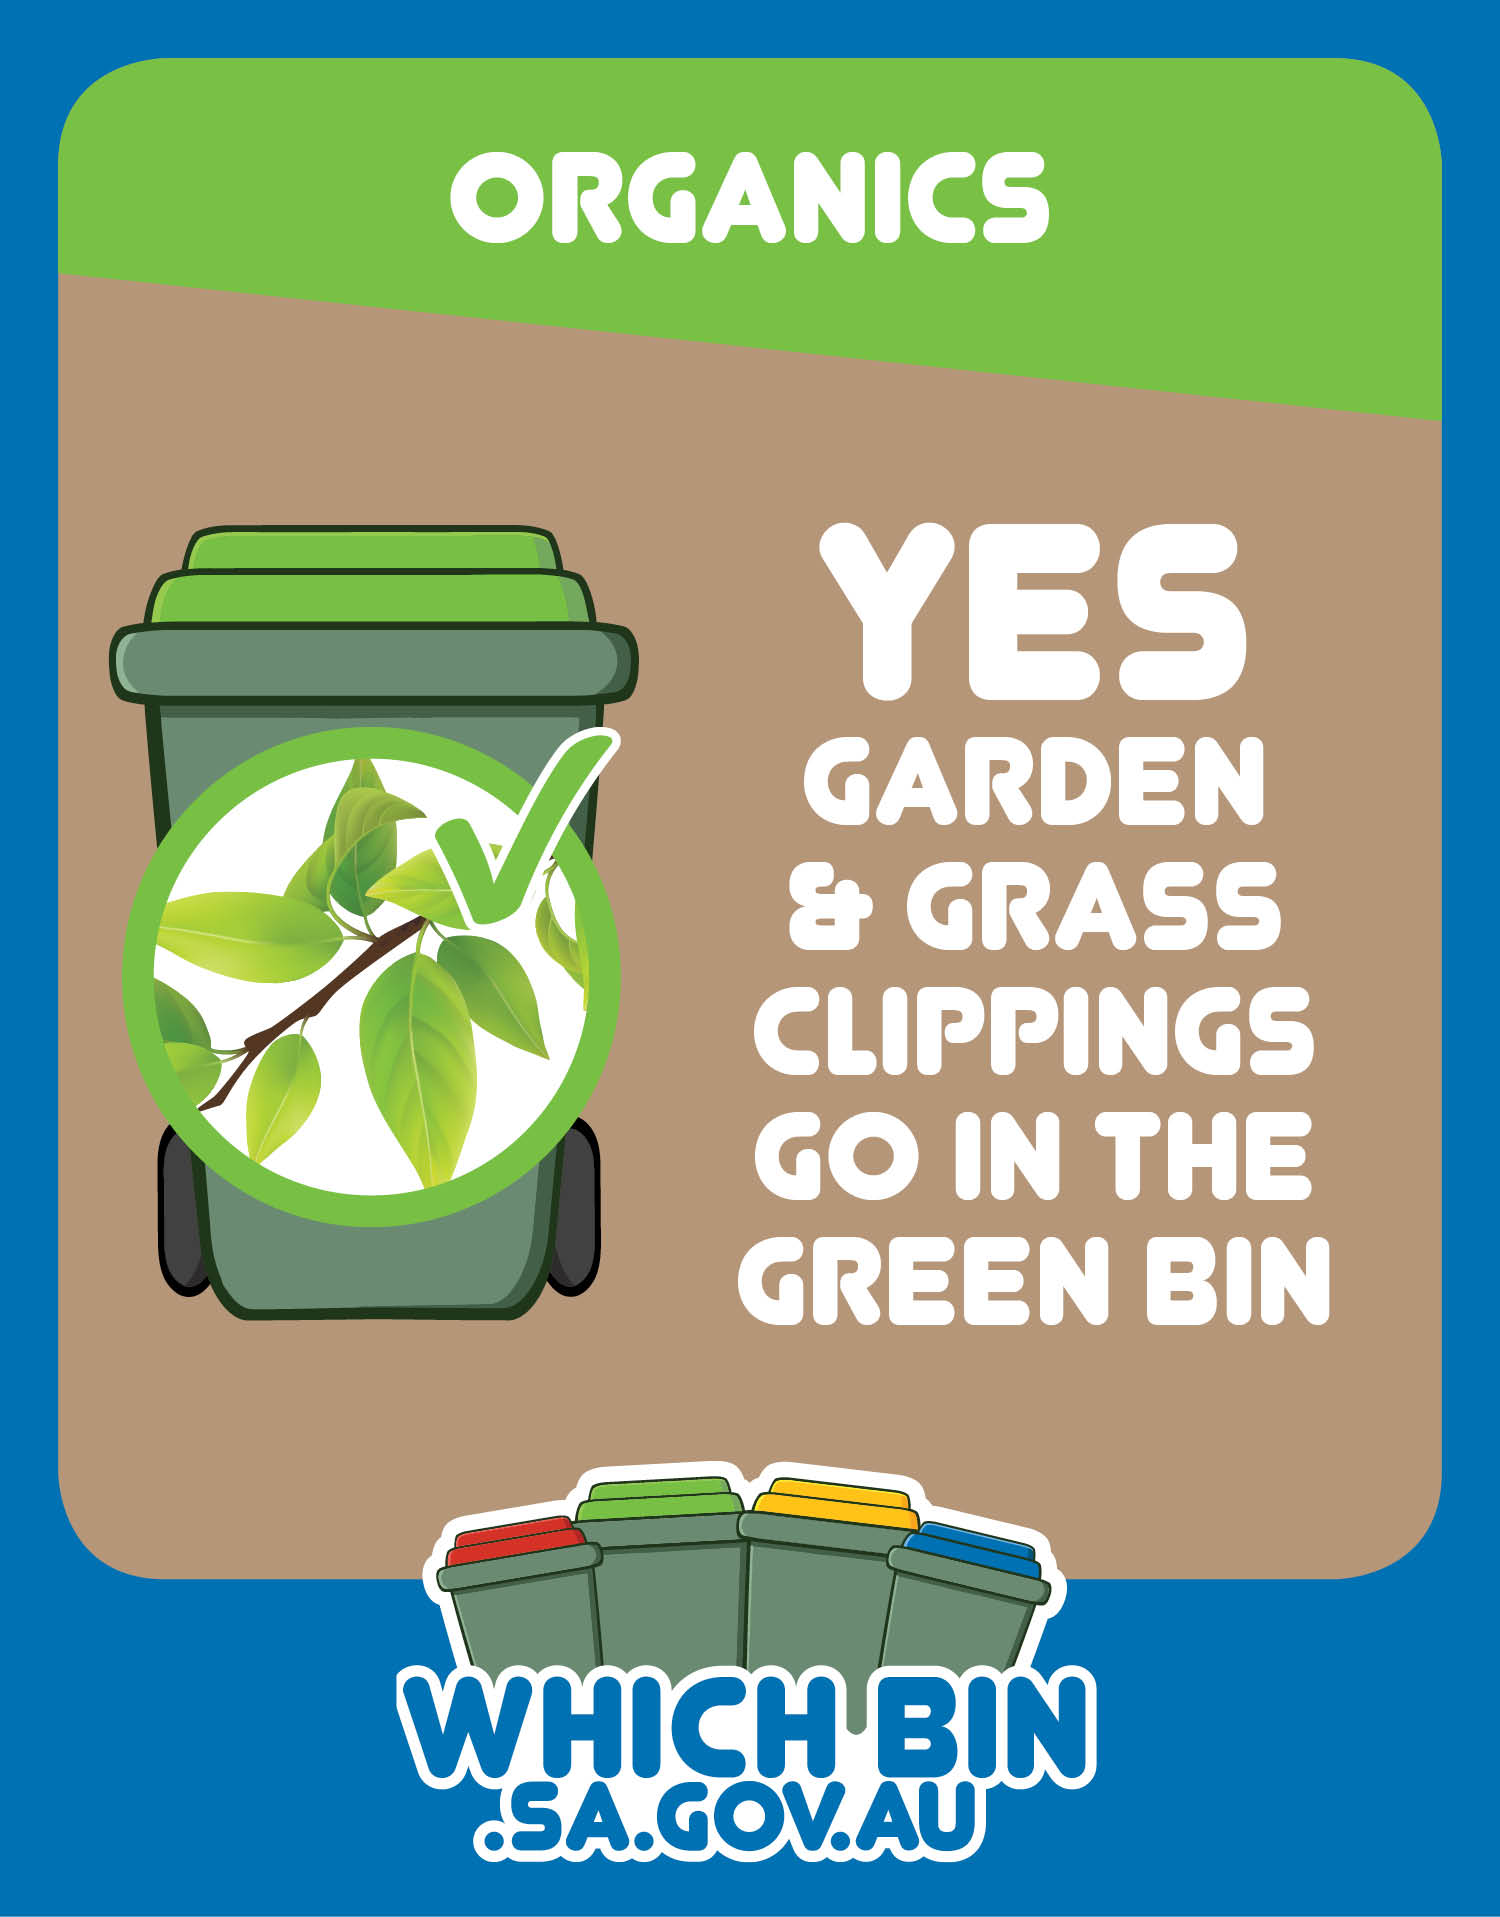 If it grows in your garden, it goes in the green bin.